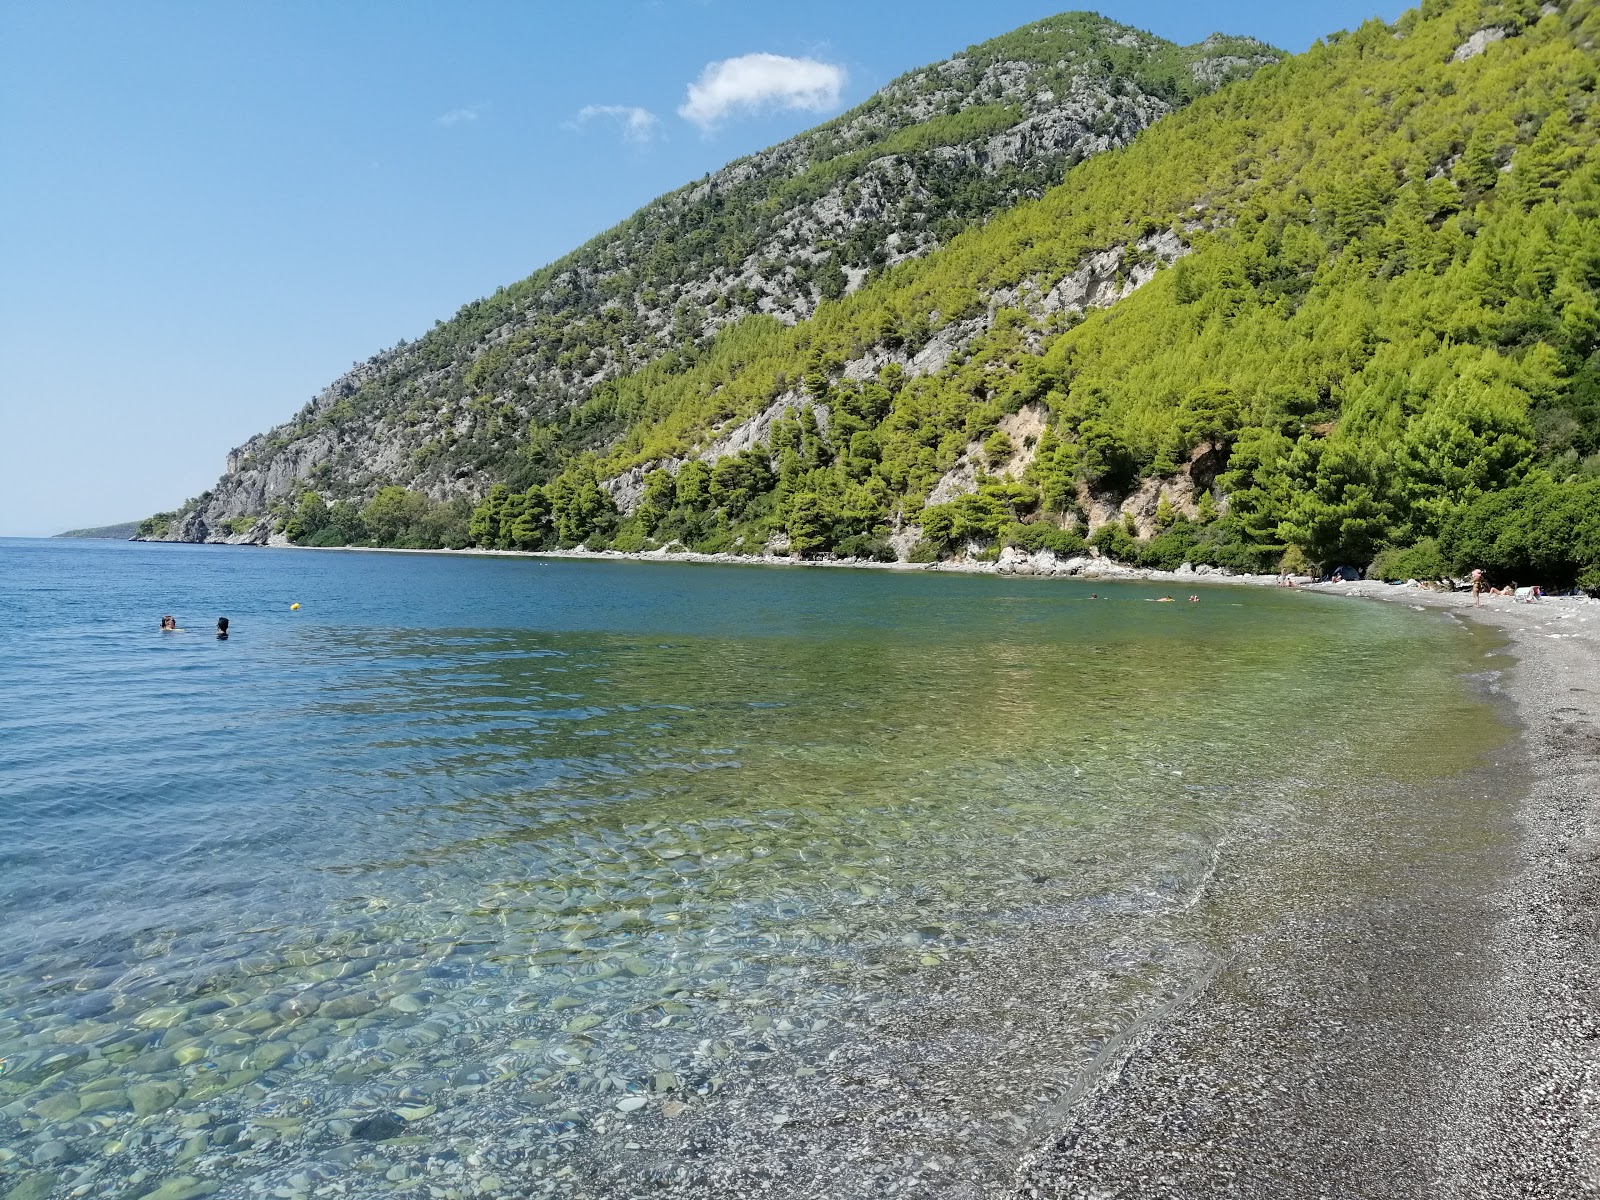 Fotografie cu Dafni of Evia beach amplasat într-o zonă naturală